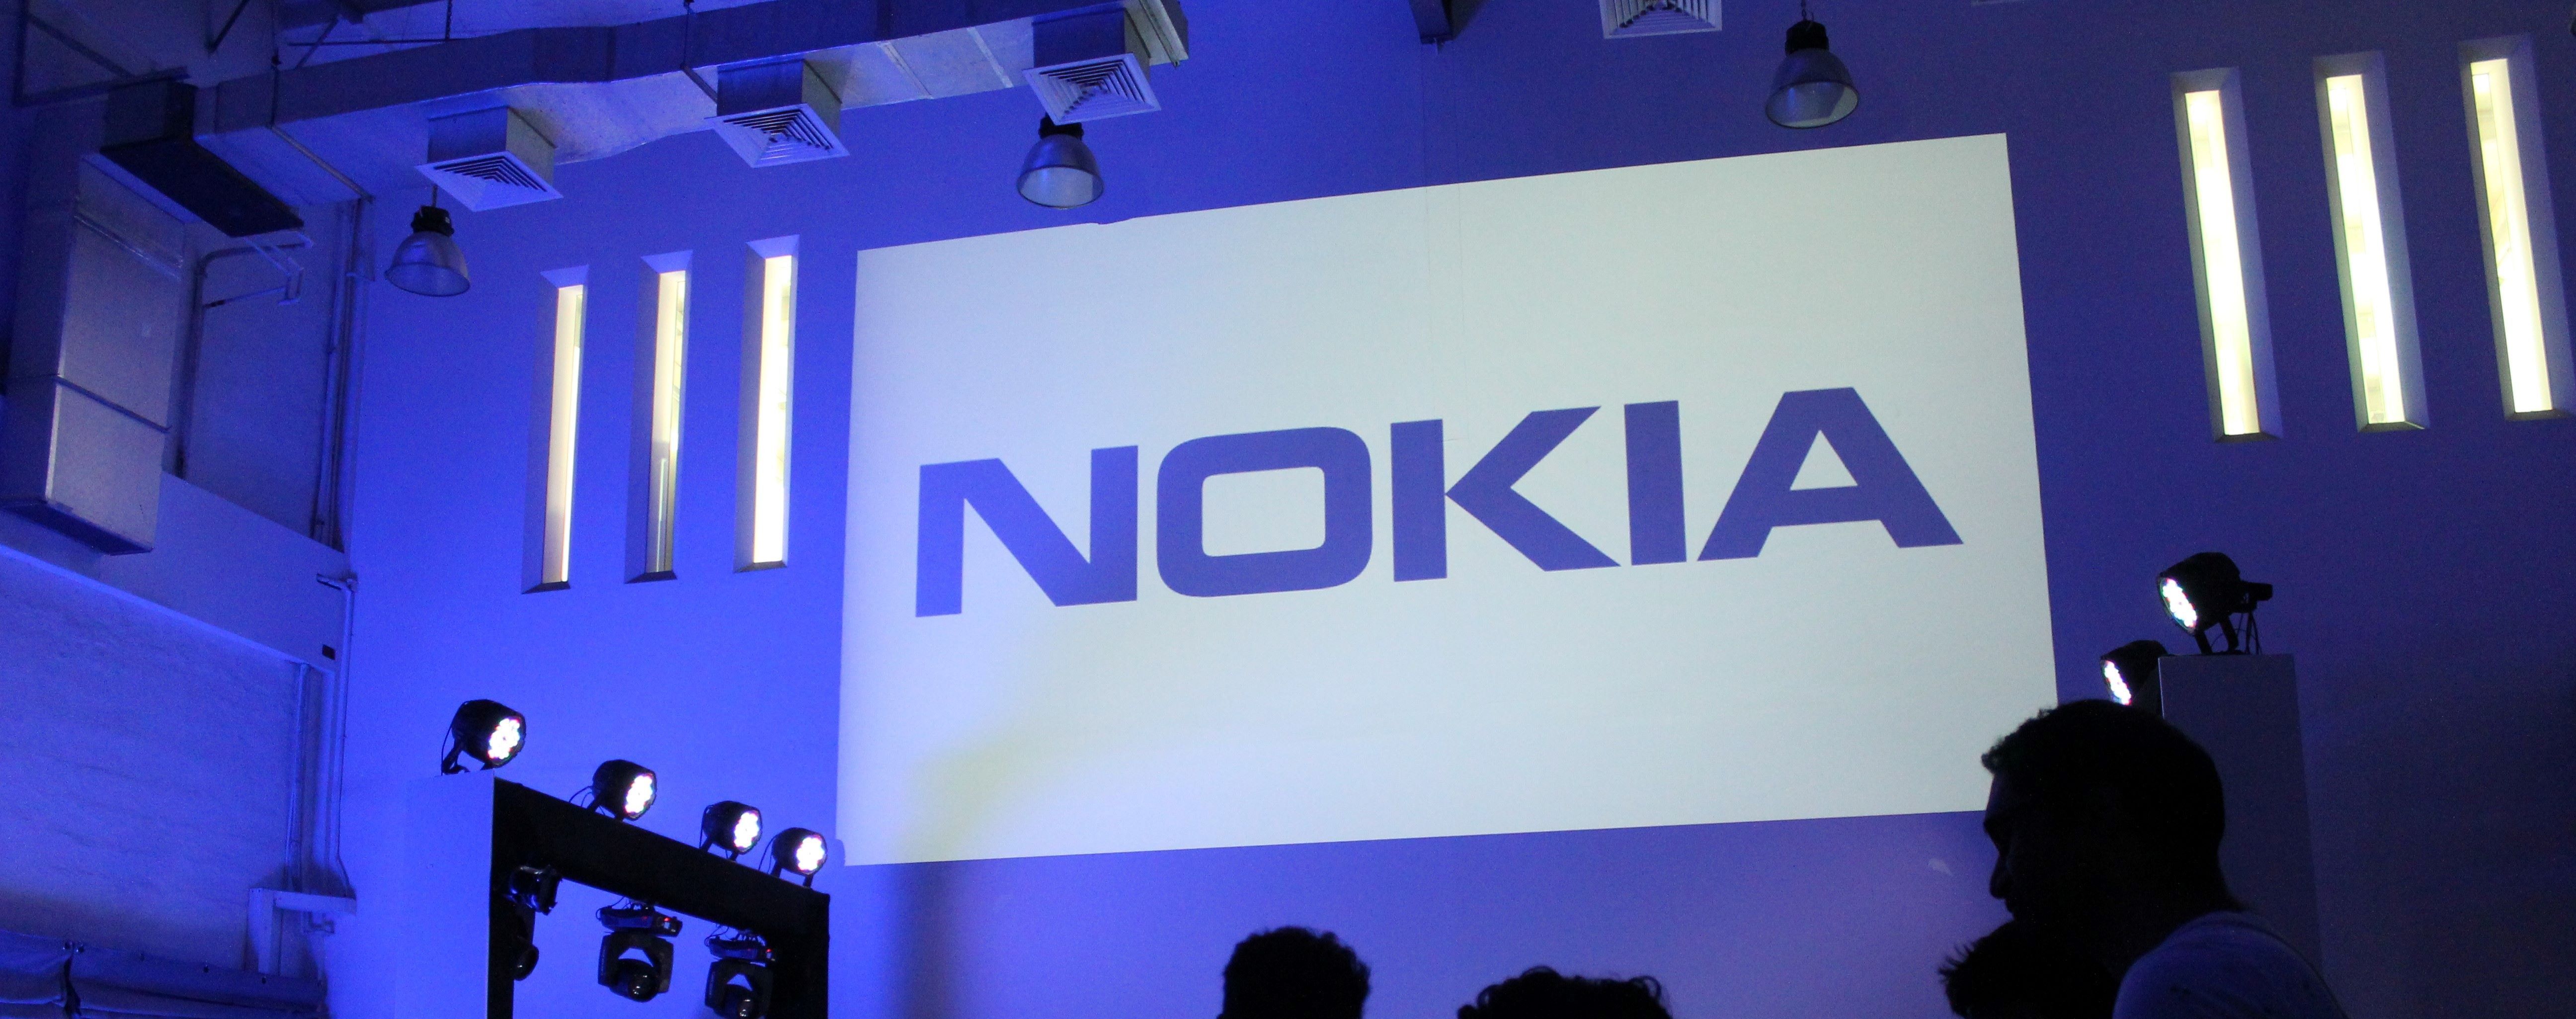 Nemcsak az okoskészülékeken keresztül látja az utat a sikerhez a Nokia